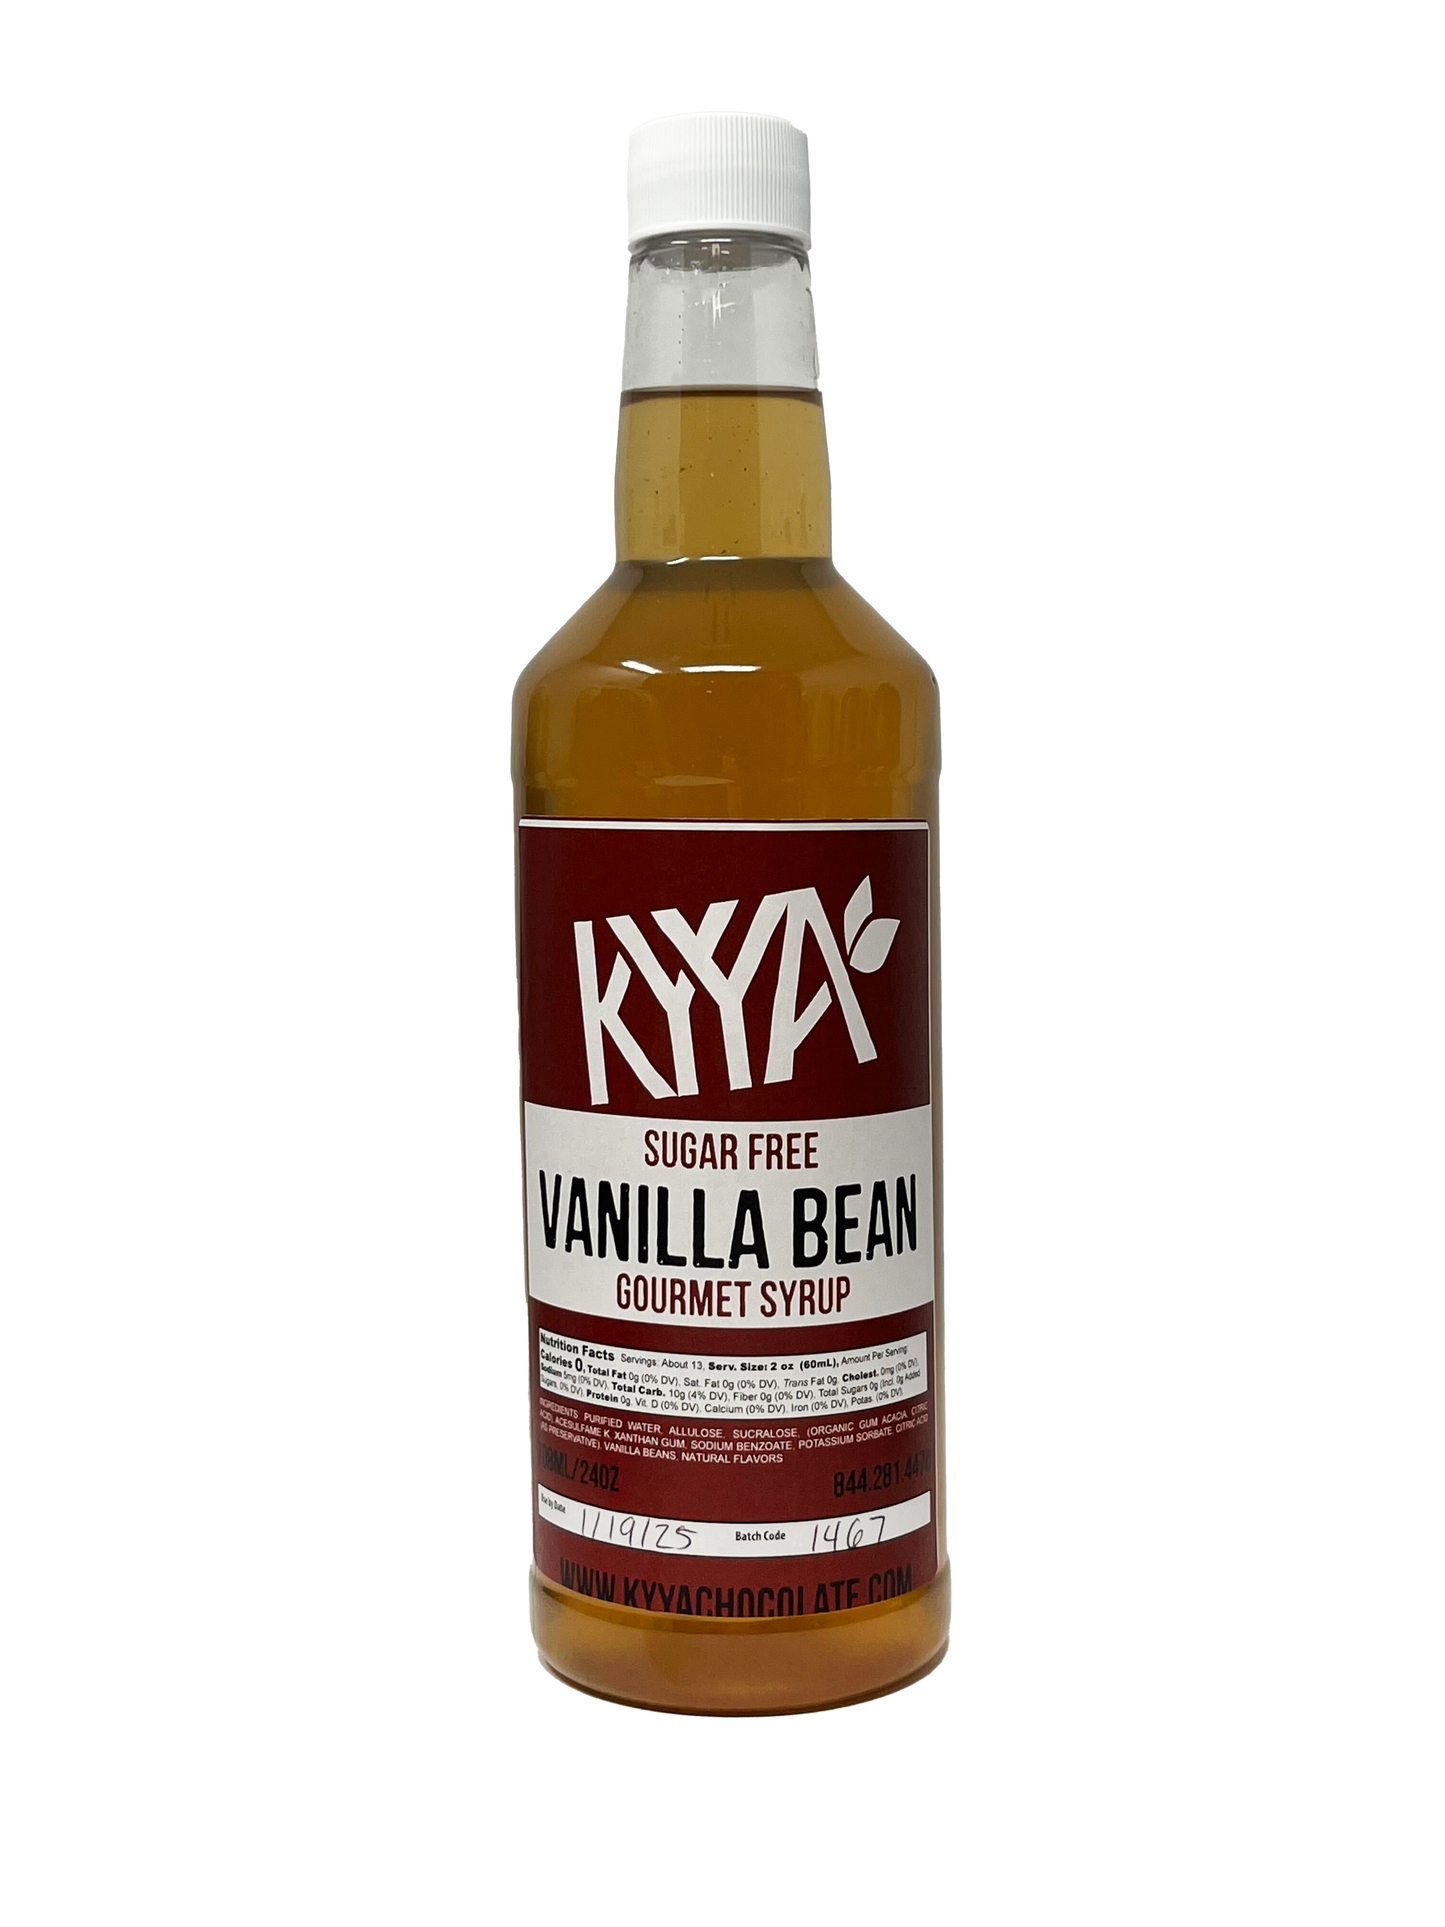 Sugar Free Vanilla Bean Gourmet Syrup